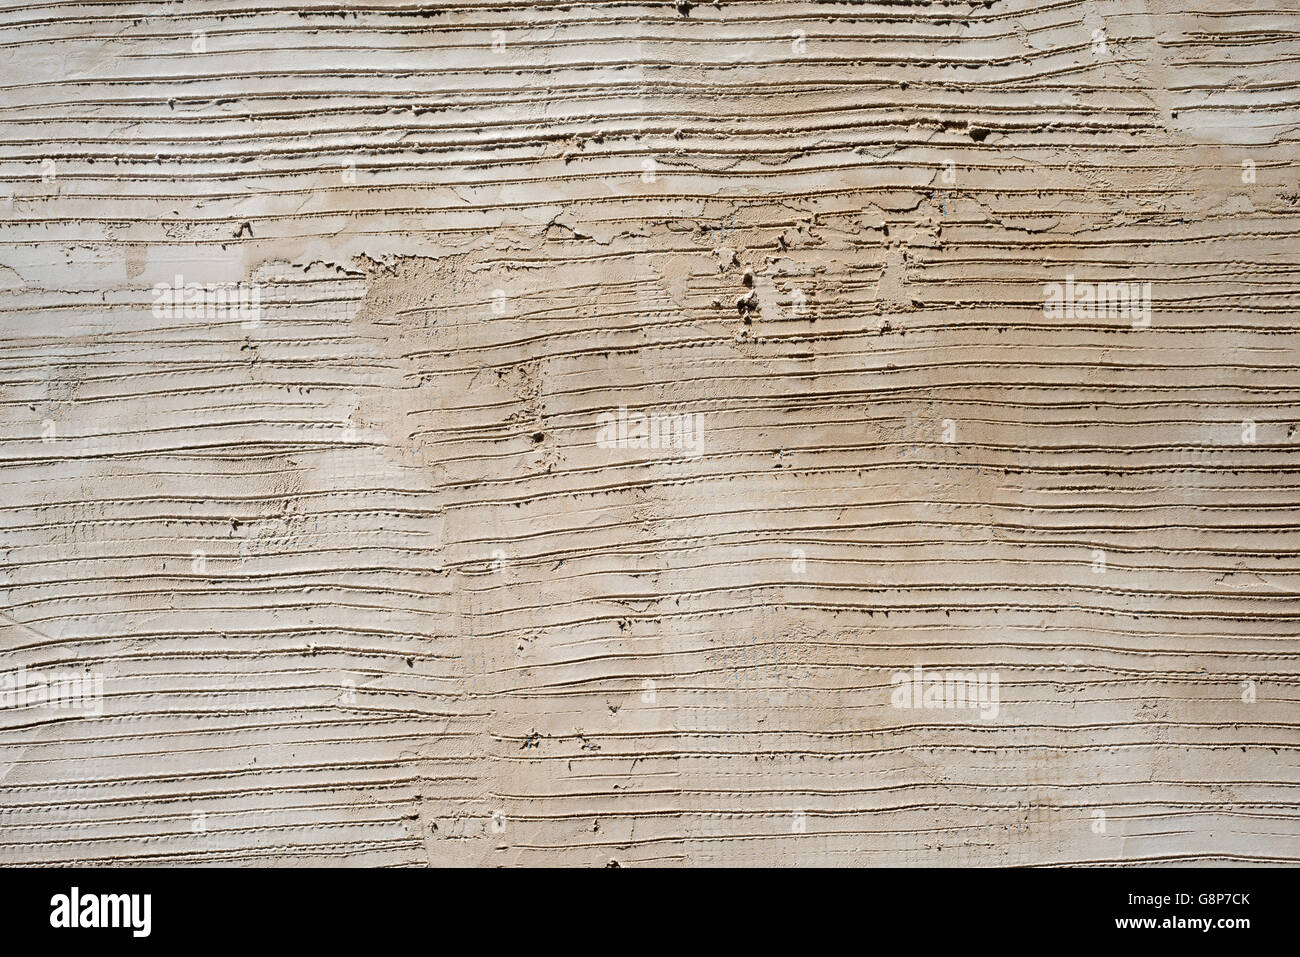 Concrete cement lines texture pattern close up detail. Stock Photo